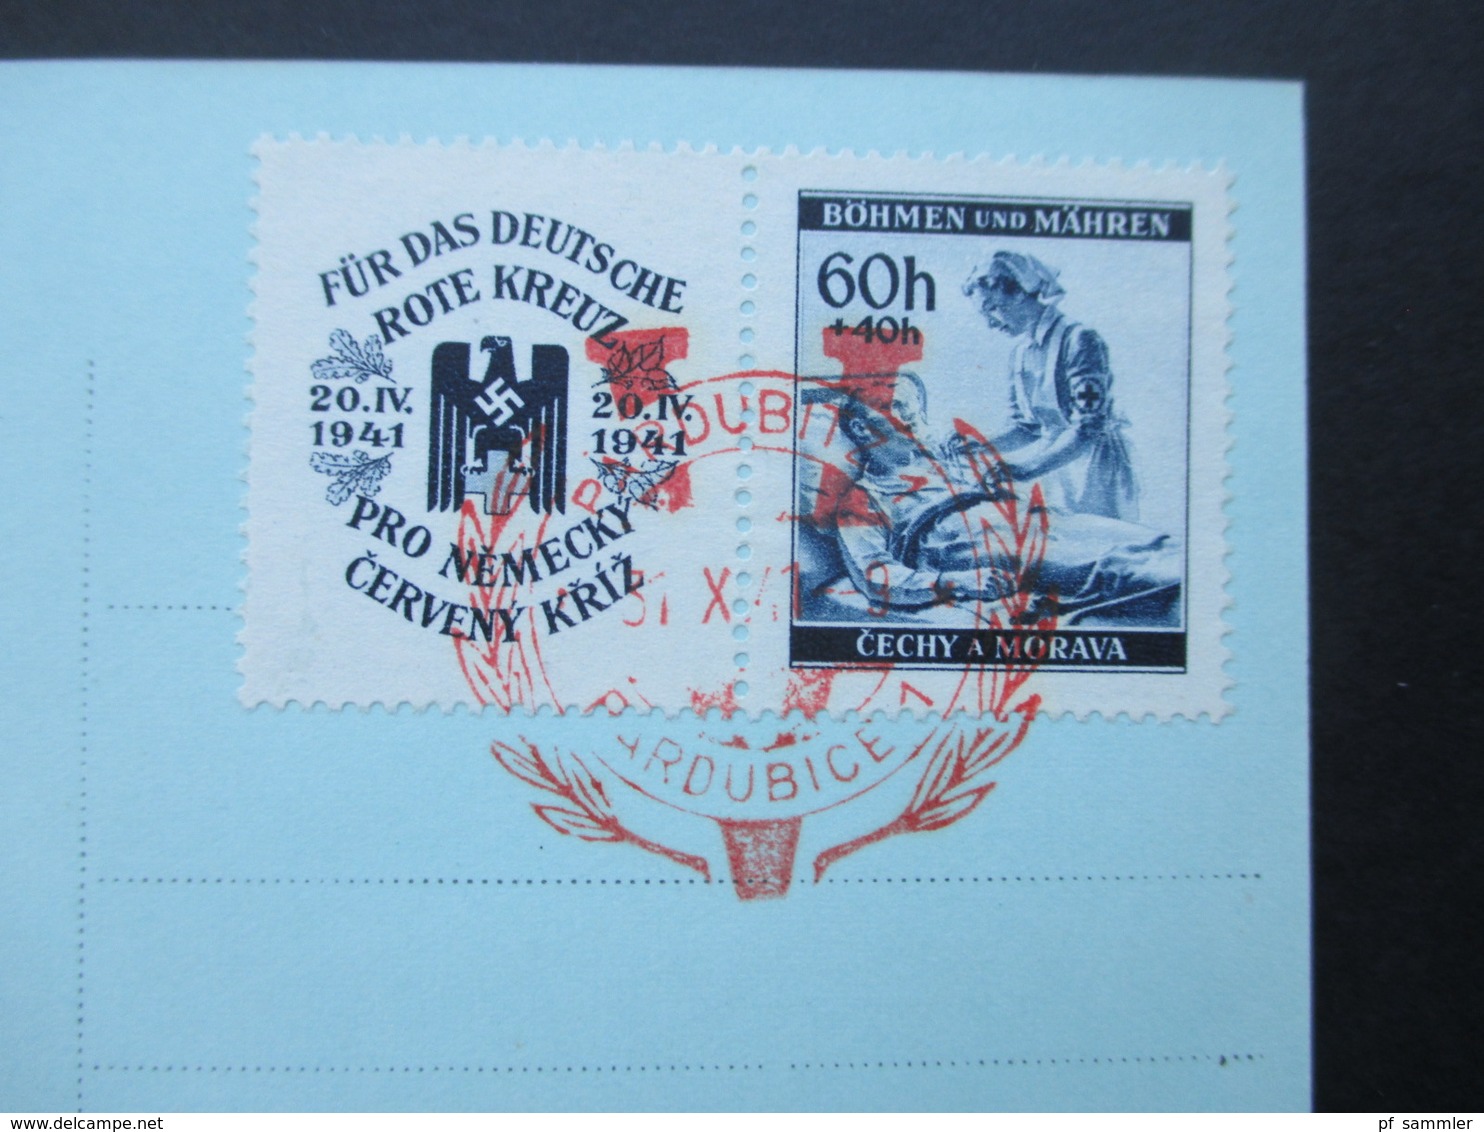 Böhmen Und Mähren 1941 Nr. 62 Zf Echtofoto Postkarte Pardubitz. Roter Sonderstempel 31.X..41 - Storia Postale